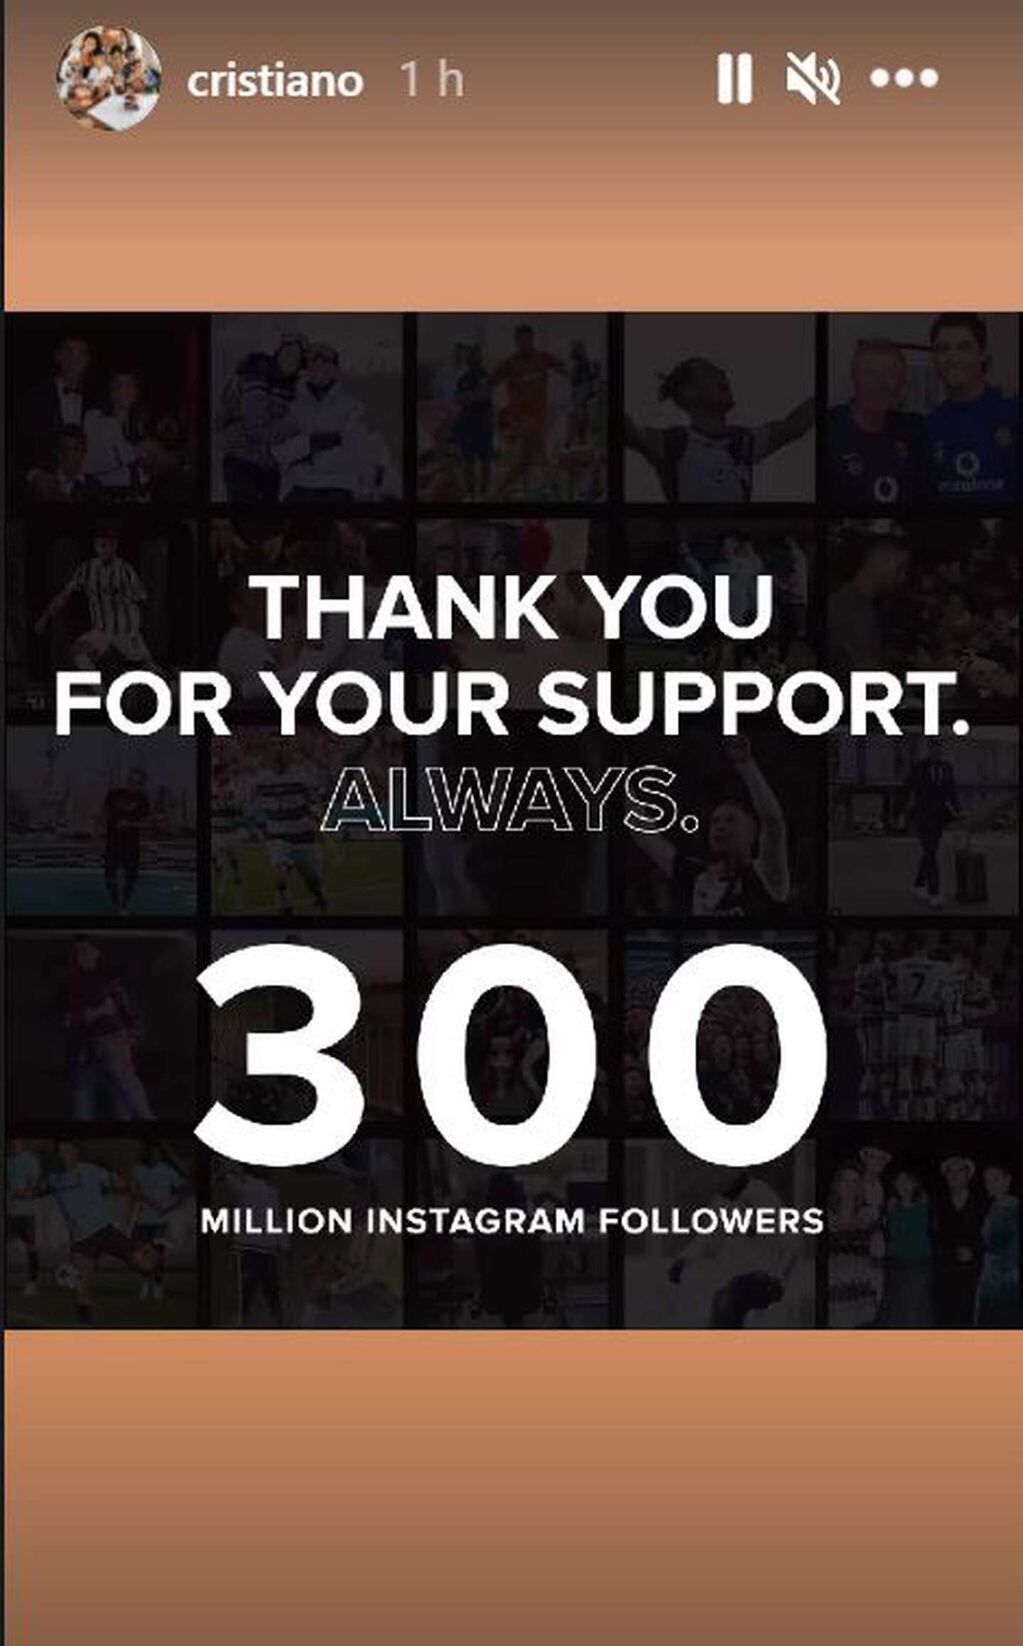 Cristiano Ronaldo le agradeció a sus 300 millones de seguidores en Instagram.